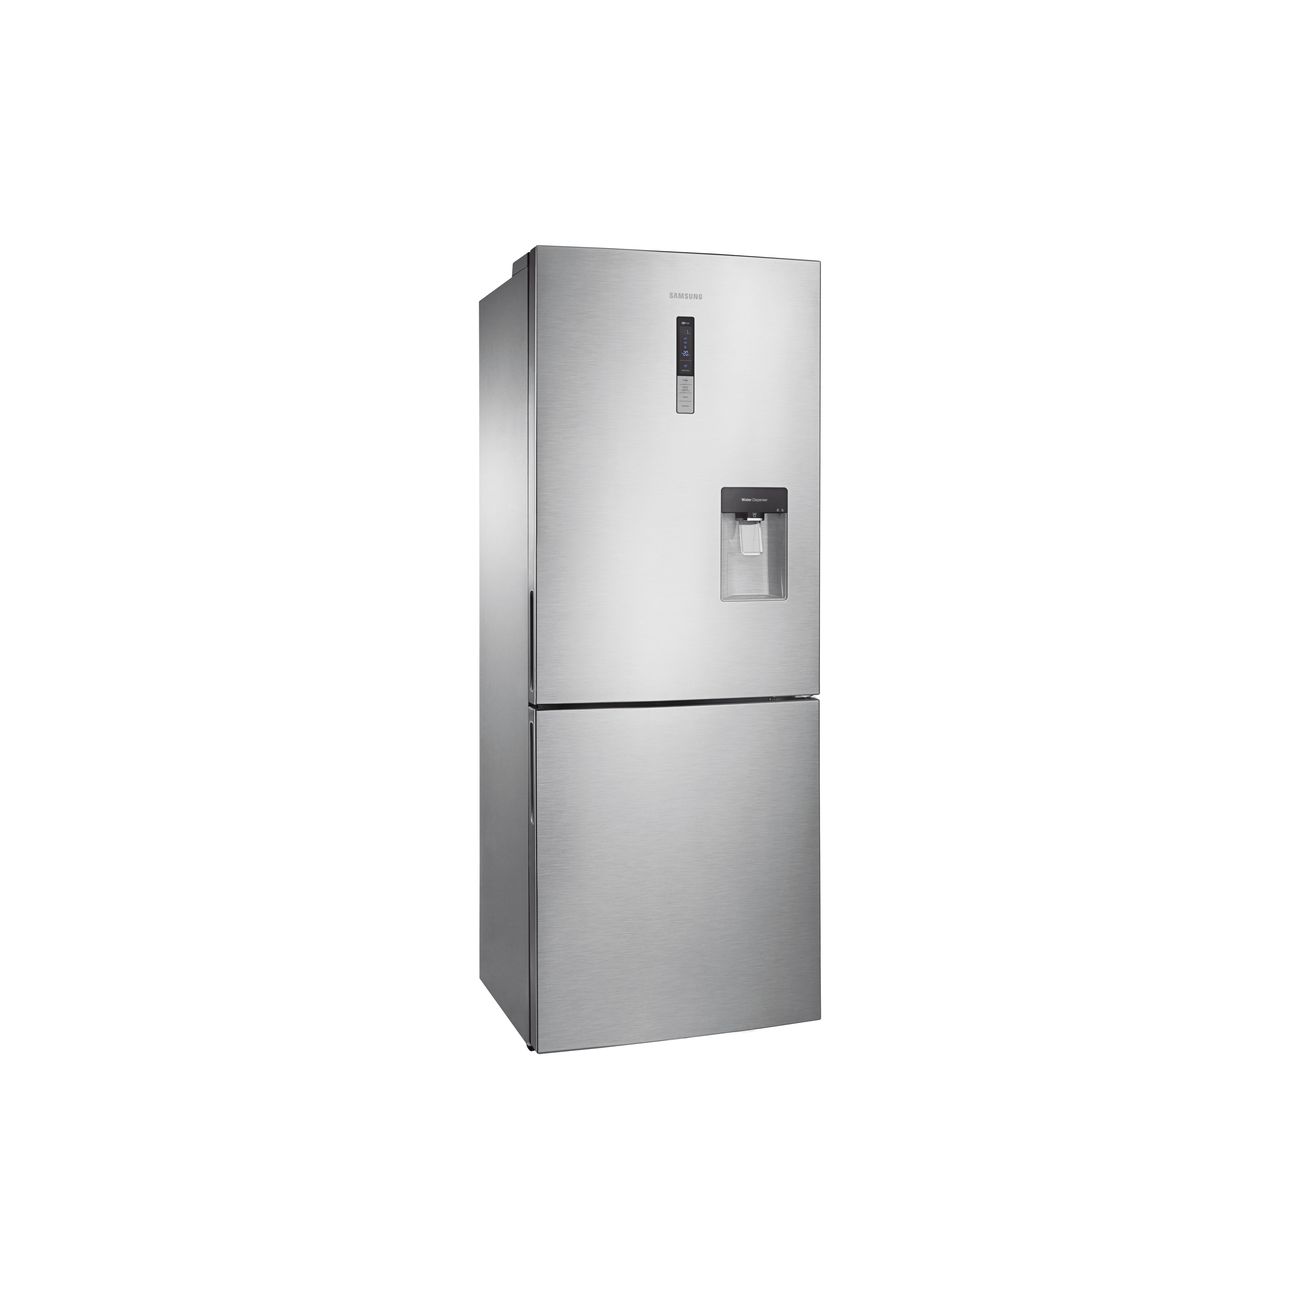 Двухкамерный холодильник lg no frost. Холодильник Samsung RL-4353 EBASL. Холодильник Samsung RL-4323 EBASL. Самсунг холодильник 4353. Самсунг холодильники rl61zbpn.